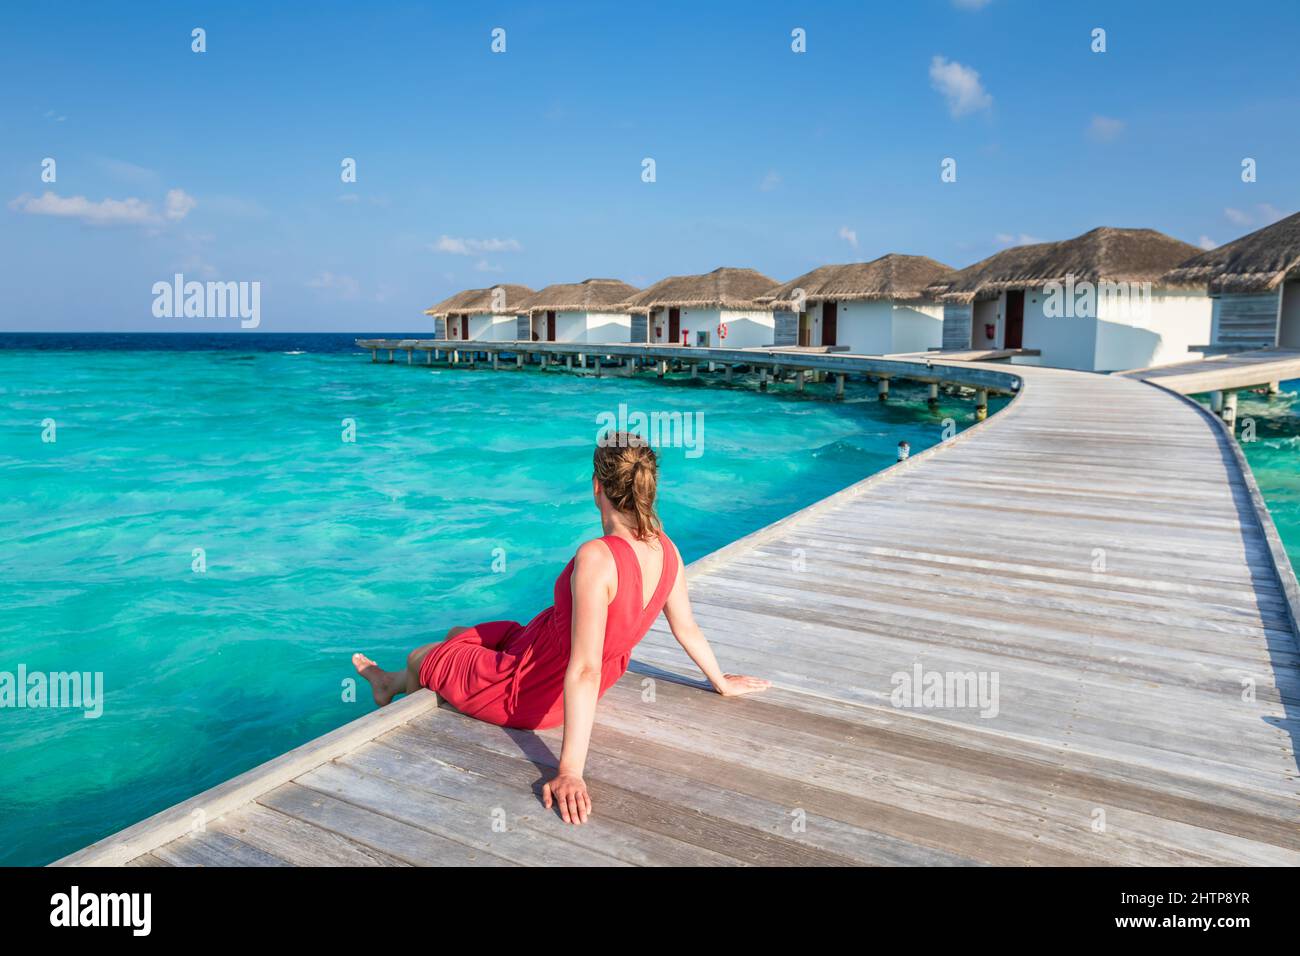 Vacances à la plage avec une femme se reposant sur une jetée en bois dans un luxueux hôtel Resort aux Maldives avec des villas sur l'eau, eau de mer turquoise et bleu s Banque D'Images